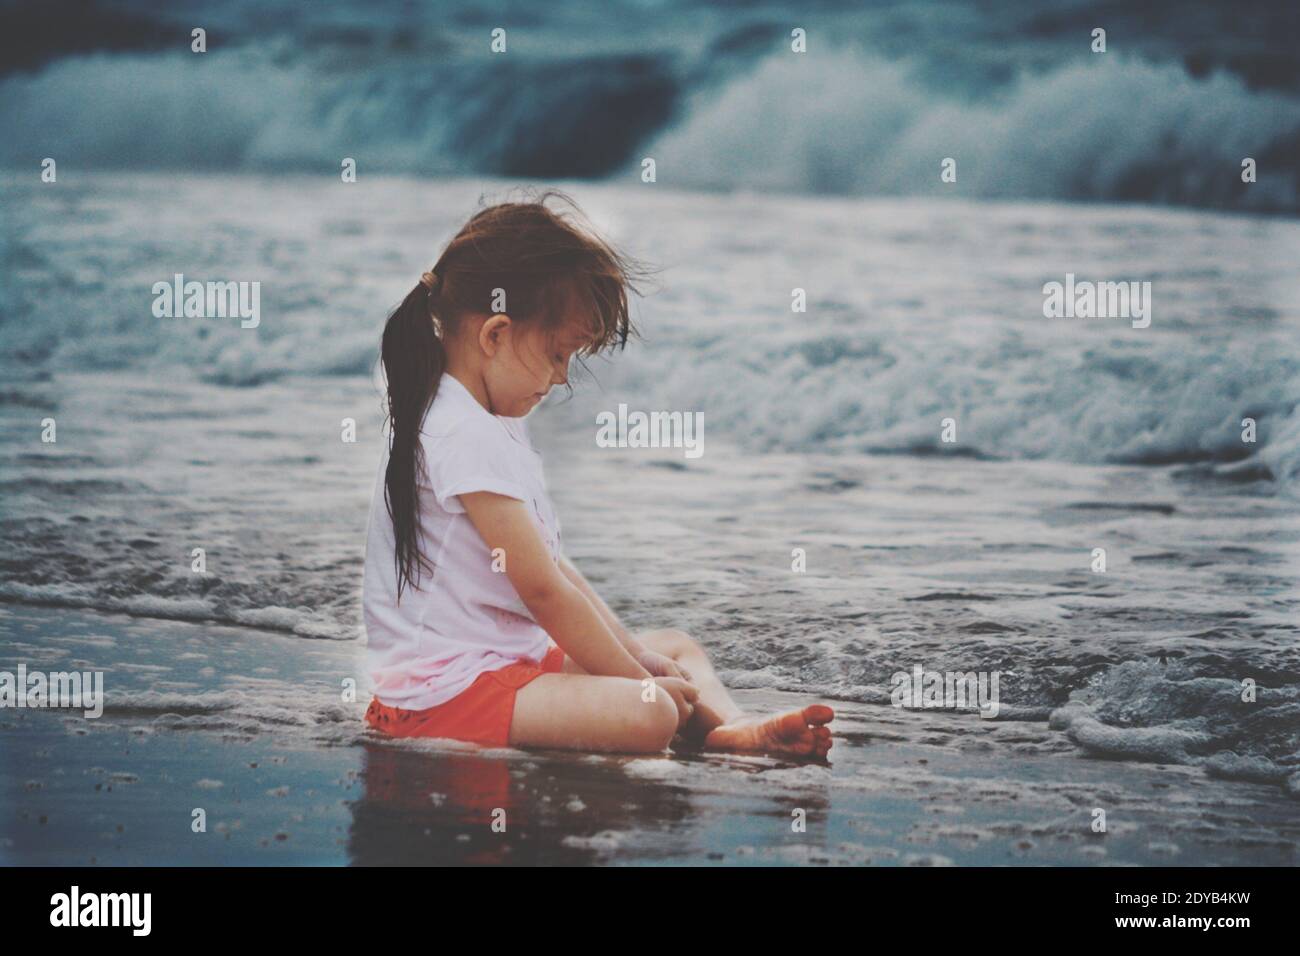 Pleine longueur de fille sur la côte de mer Photo Stock - Alamy